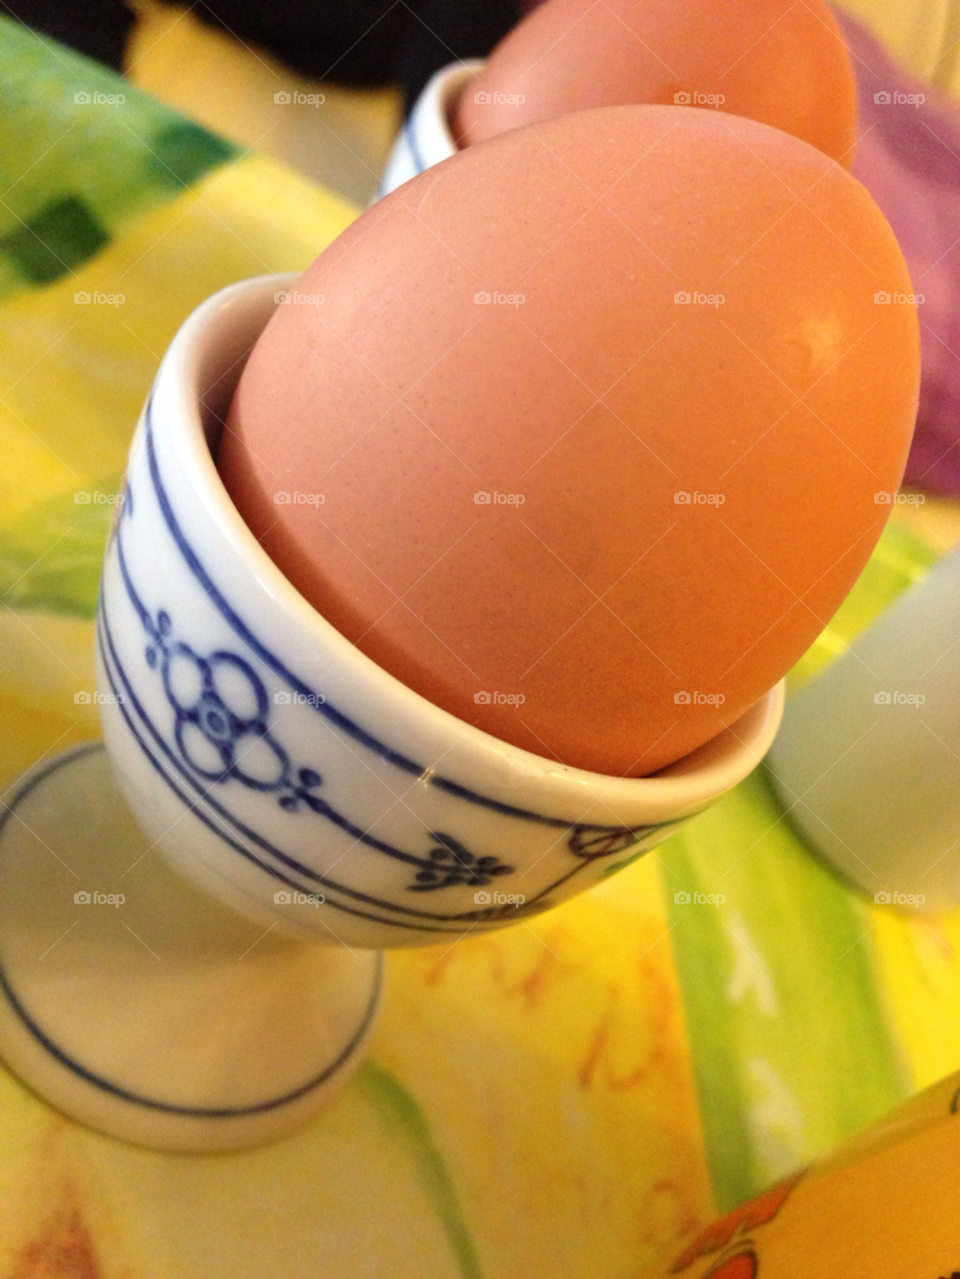 breakfast egg by chriizz